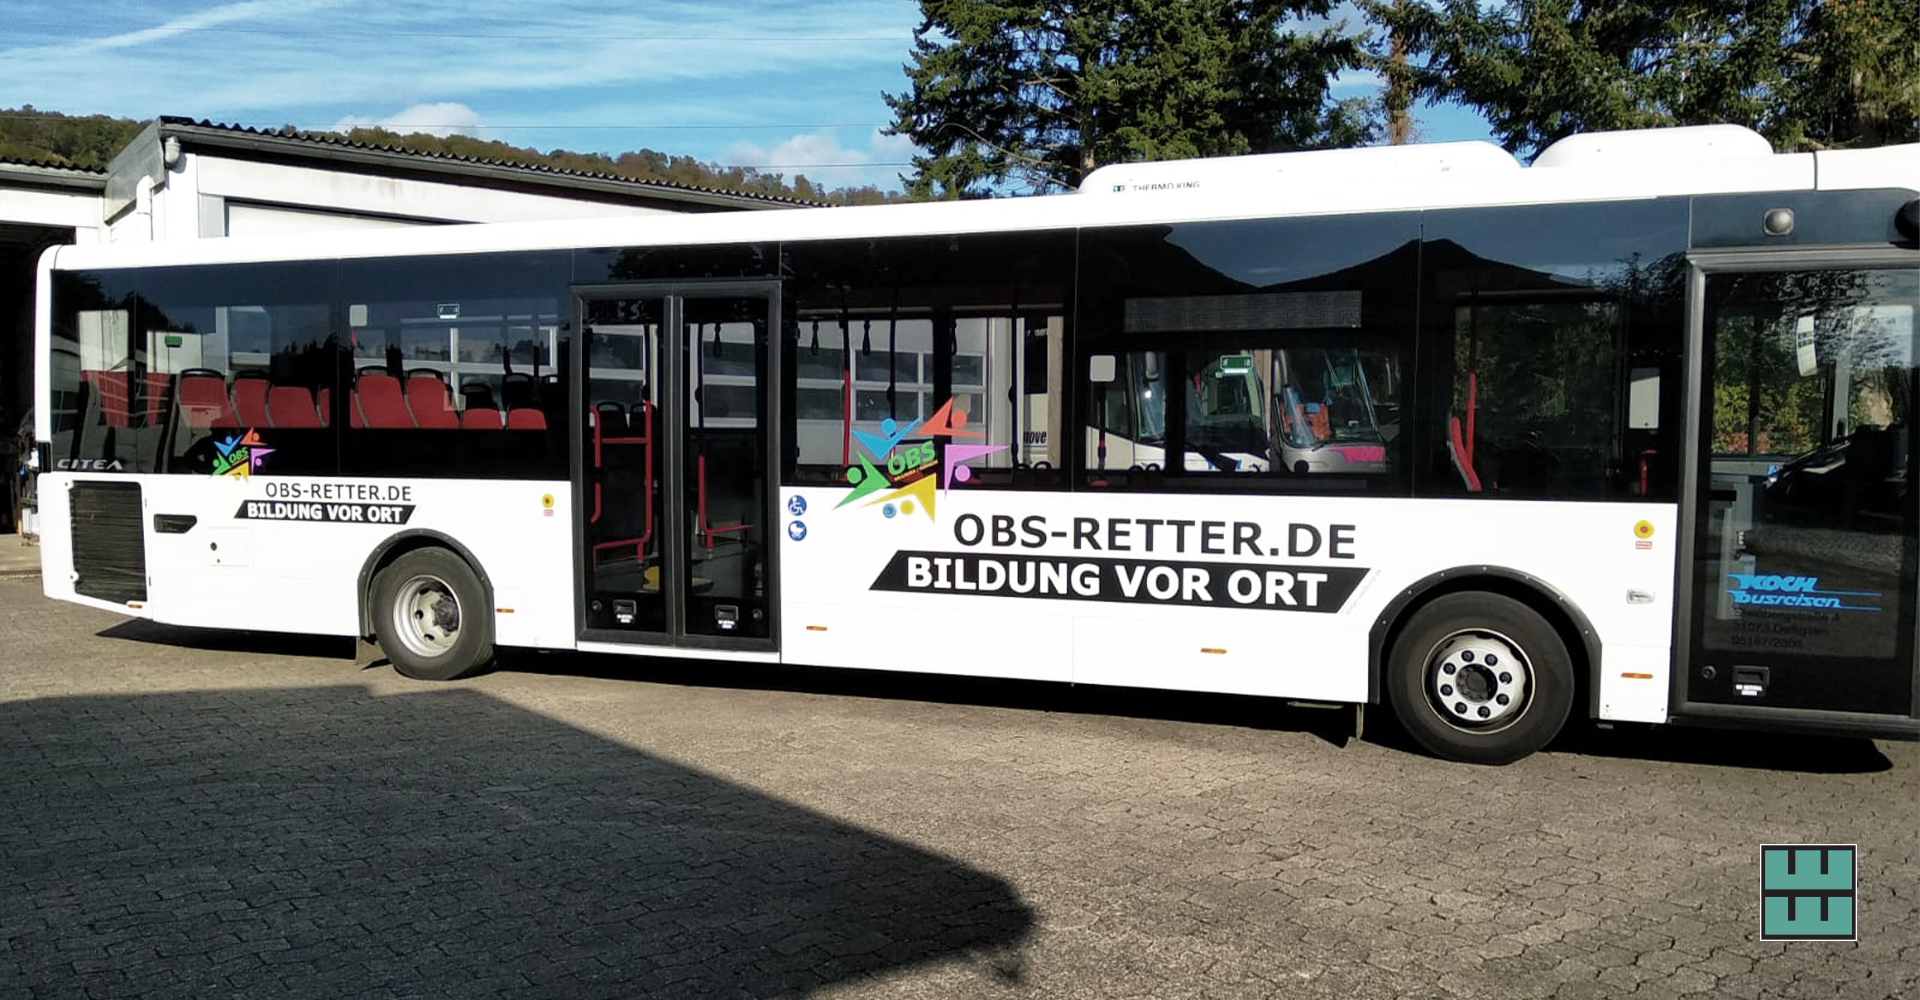 Koch Busreisen macht mit einer neuen Bus-Beklebung auf das Projekt "OBS Retter" aufmerksam. Wir haben mit dem Druck und der Beklebung unterstützt!